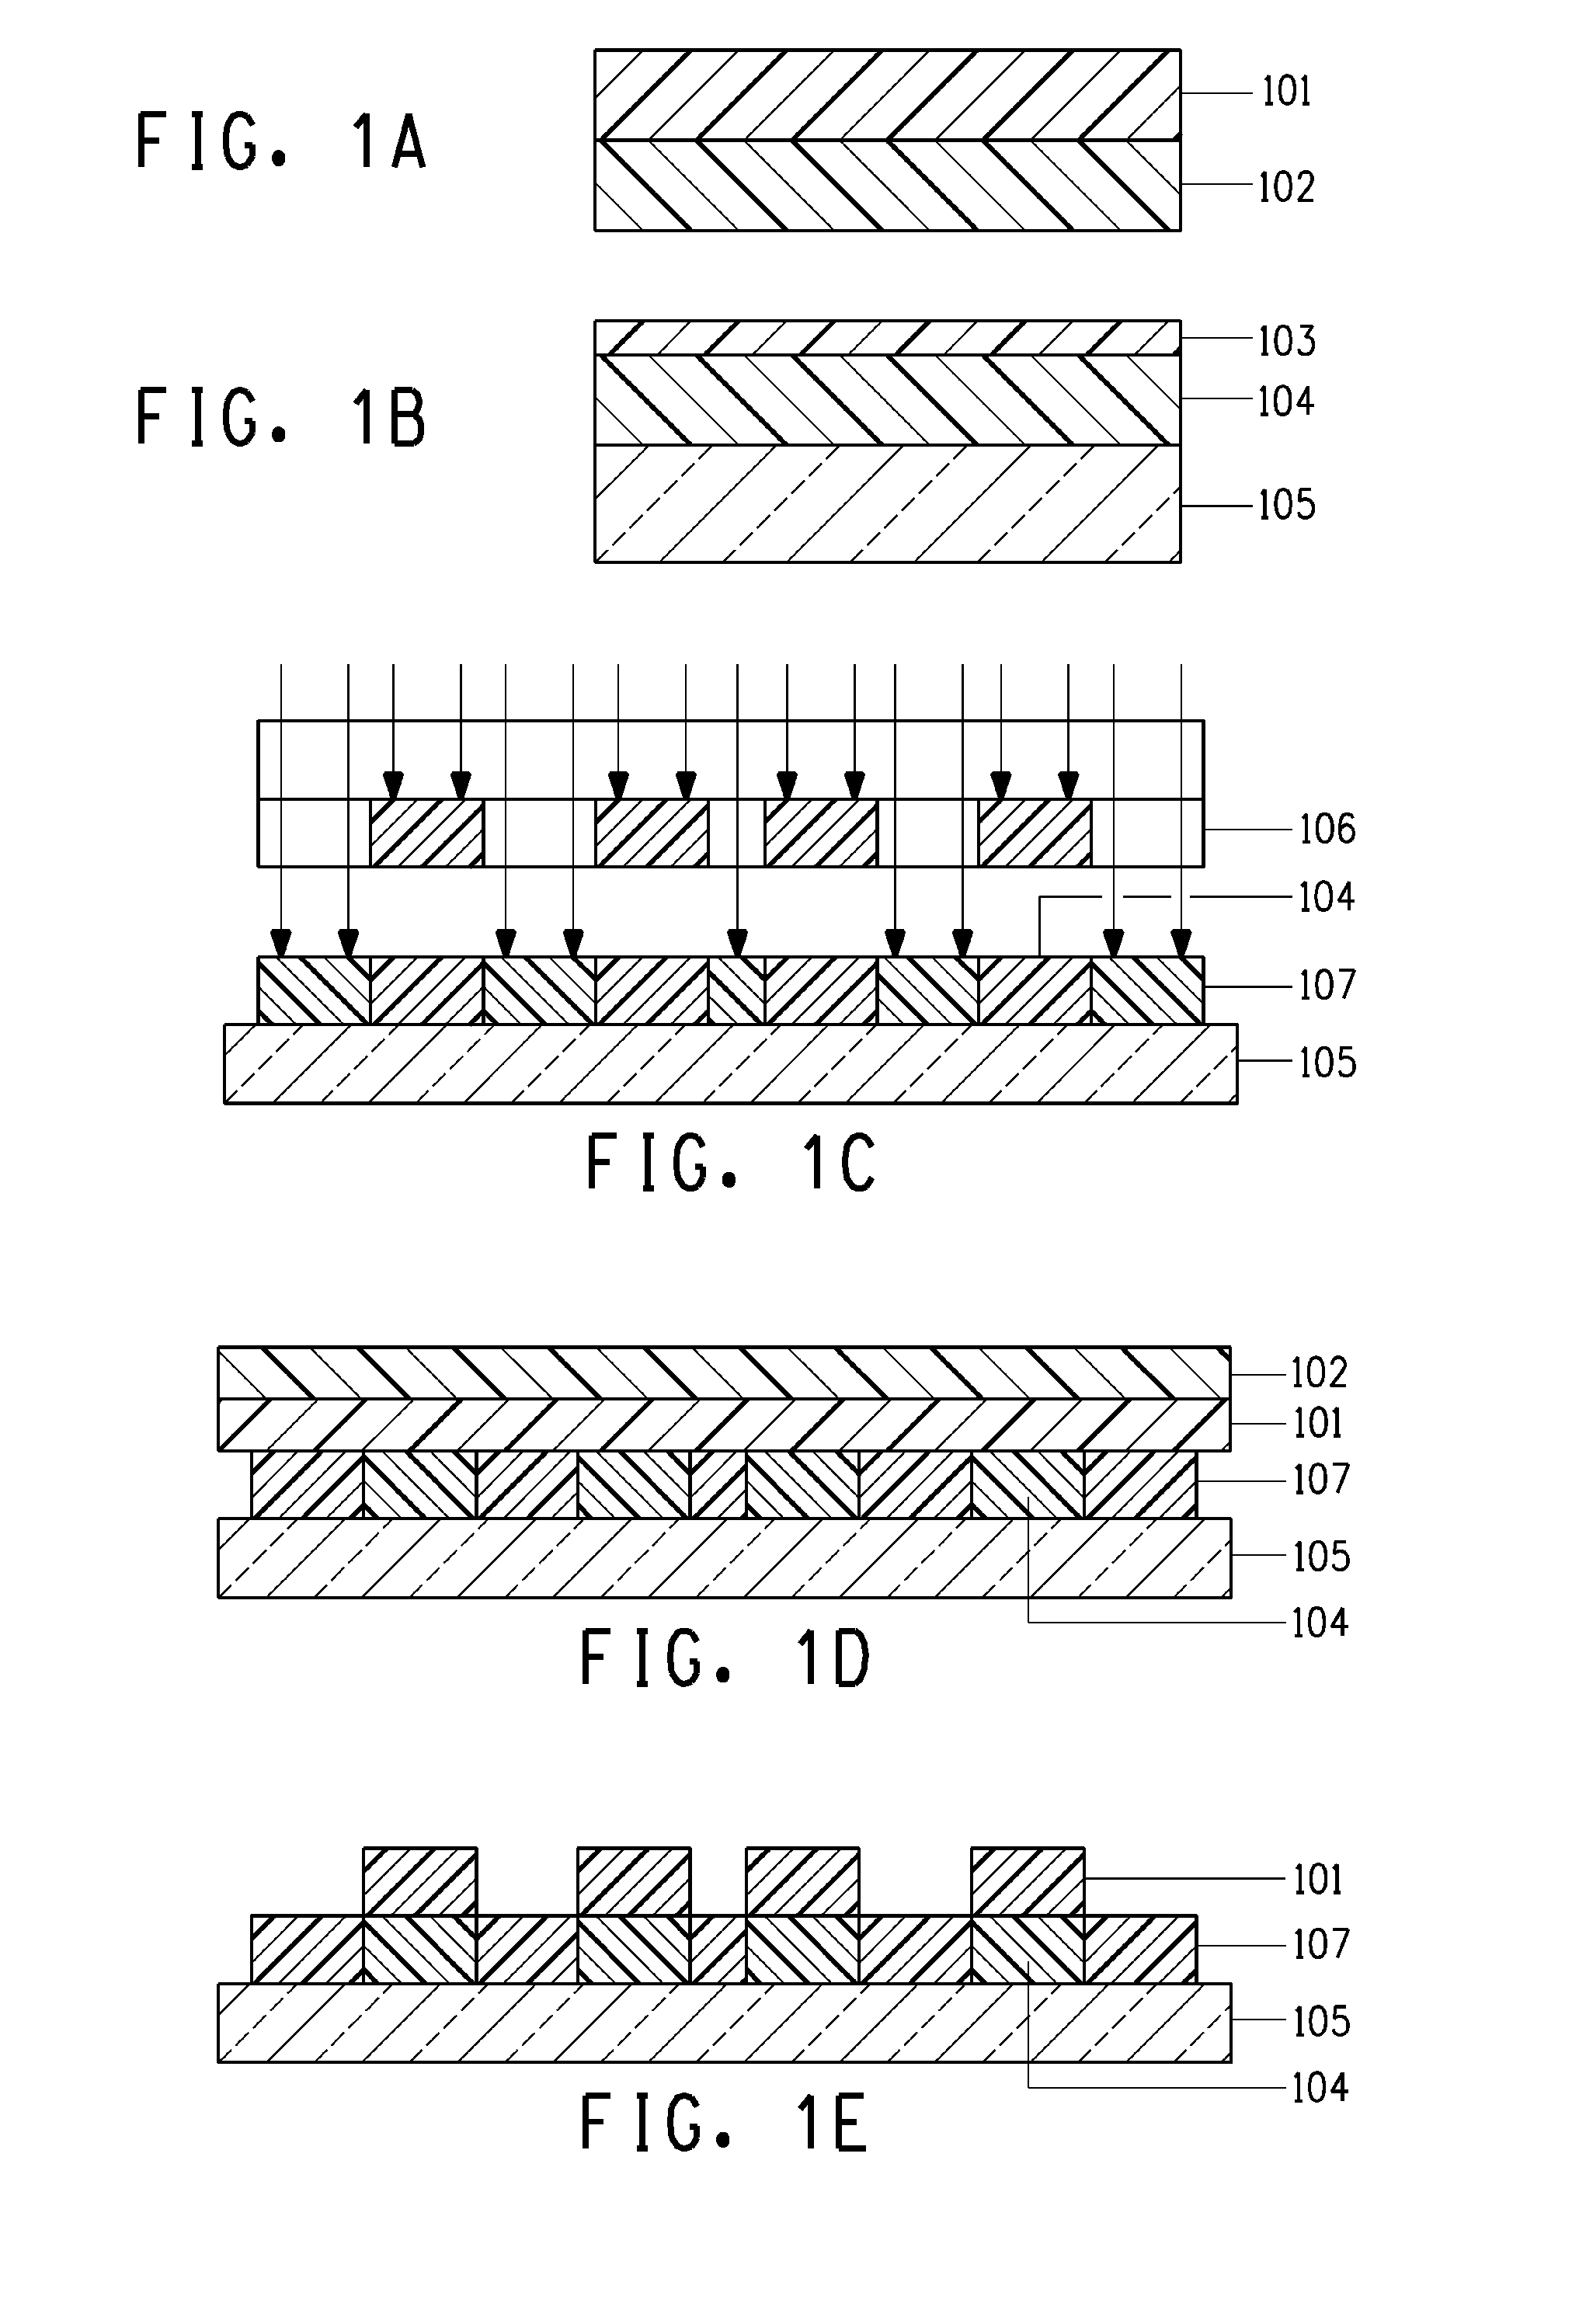 Method for forming fine electrode patterns